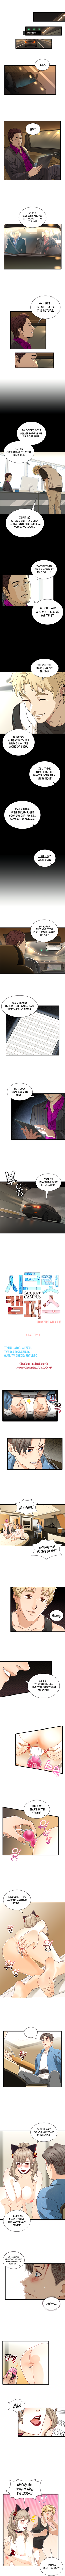 Secret Campus image